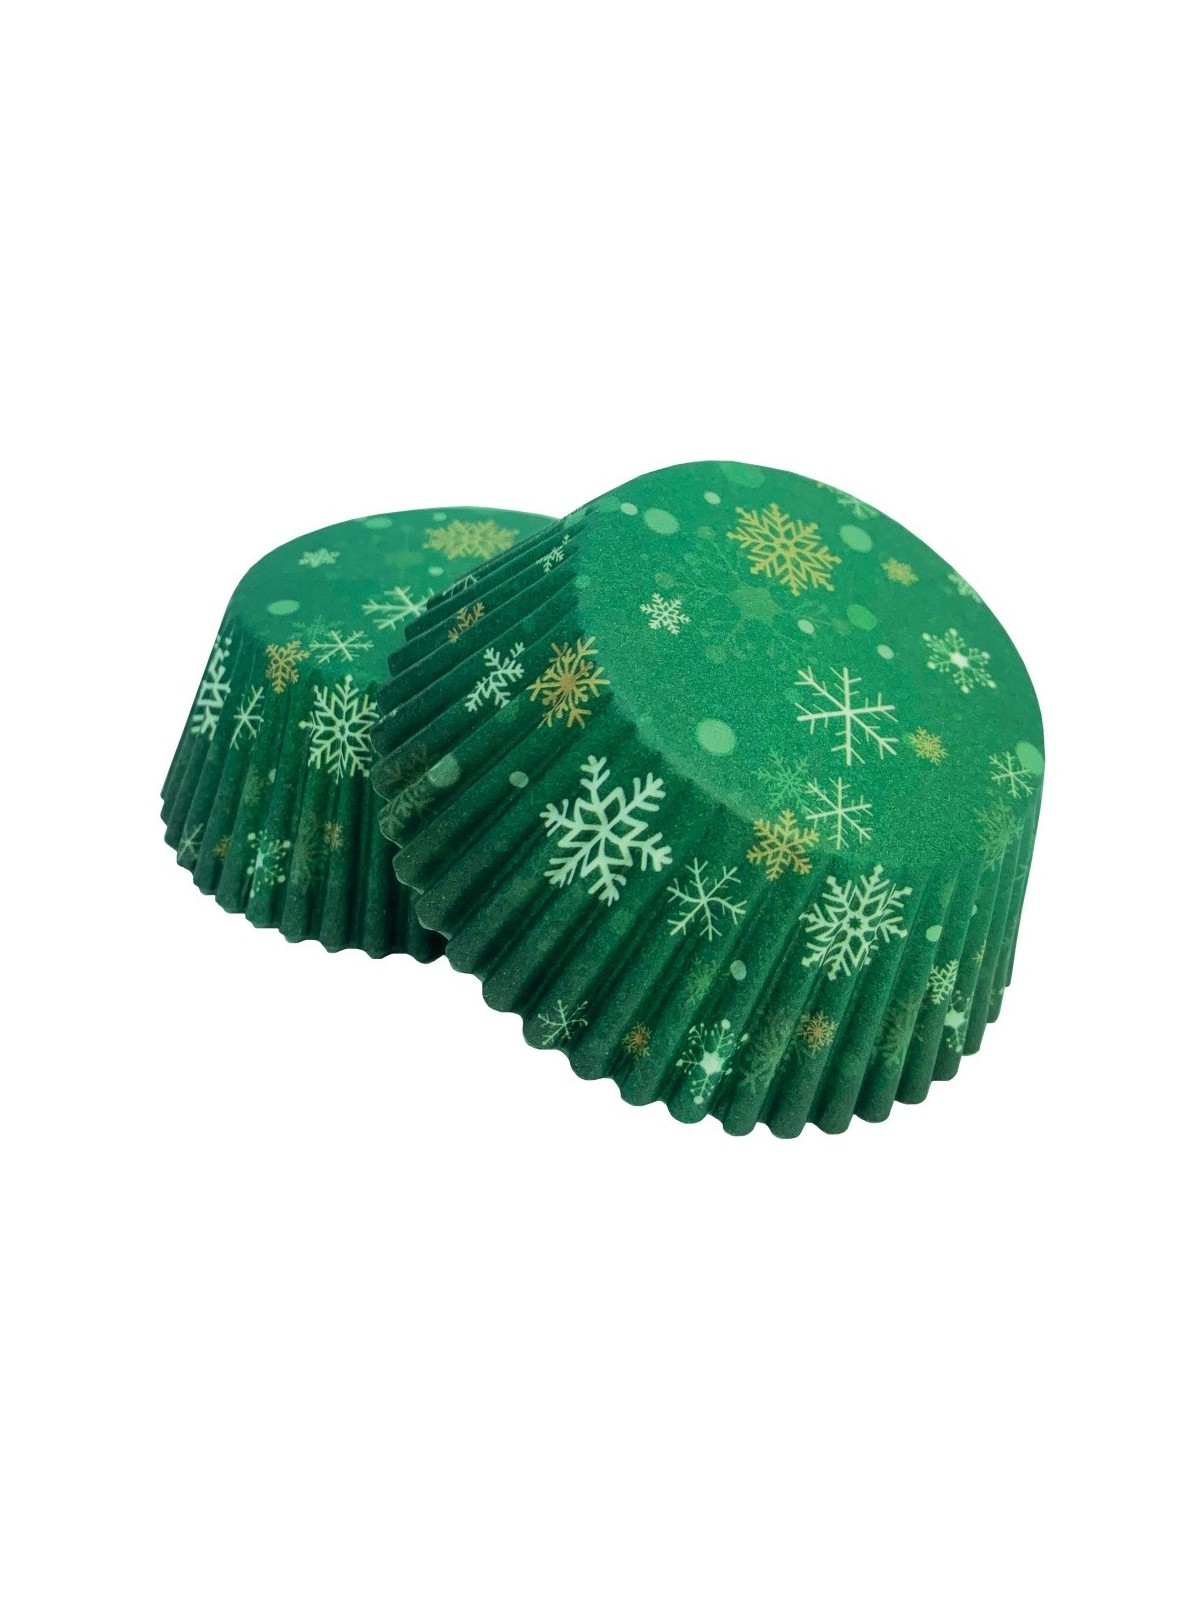 Babeczki cukiernicze - zielony - płatki śniegu - 50 szt